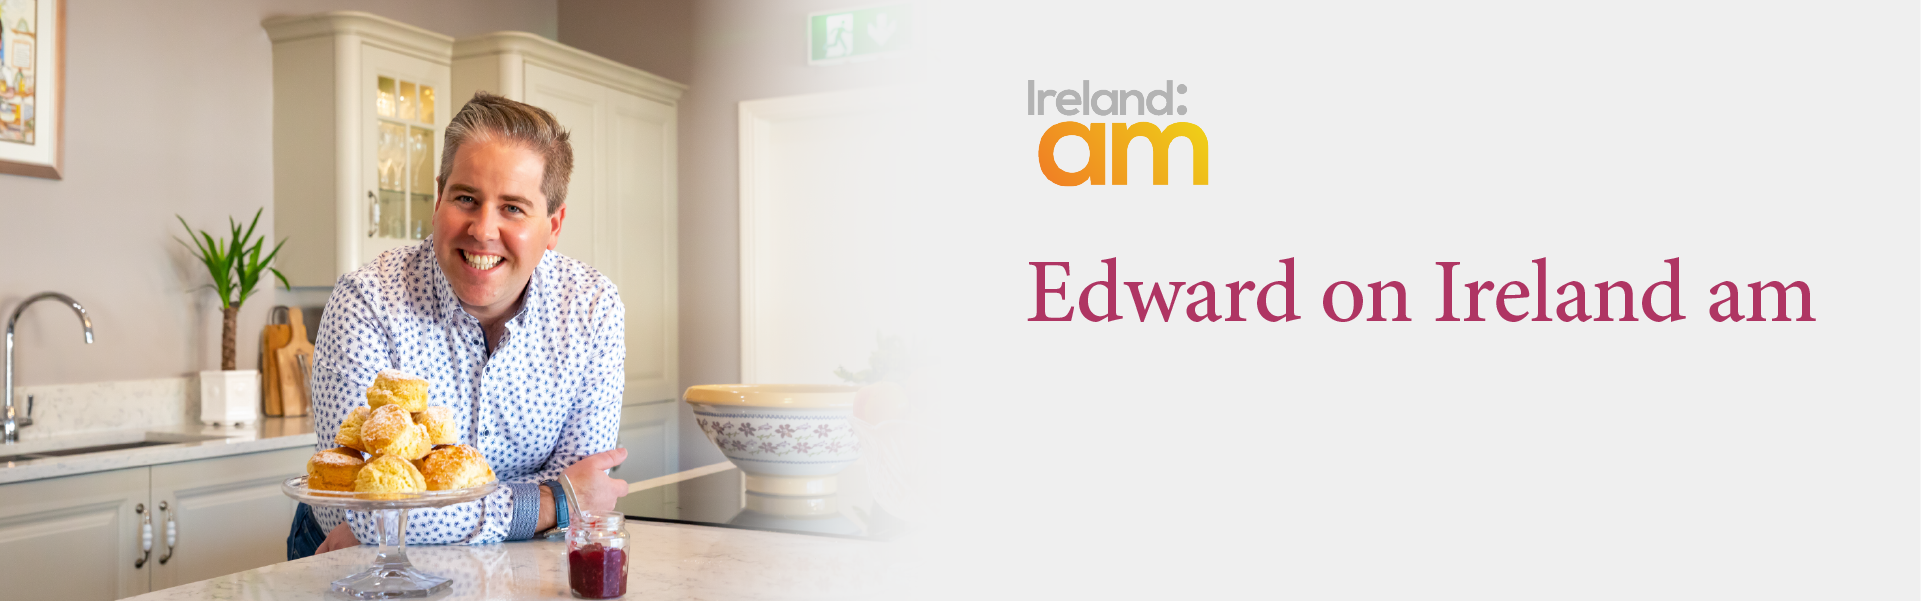 Edward on Ireland am